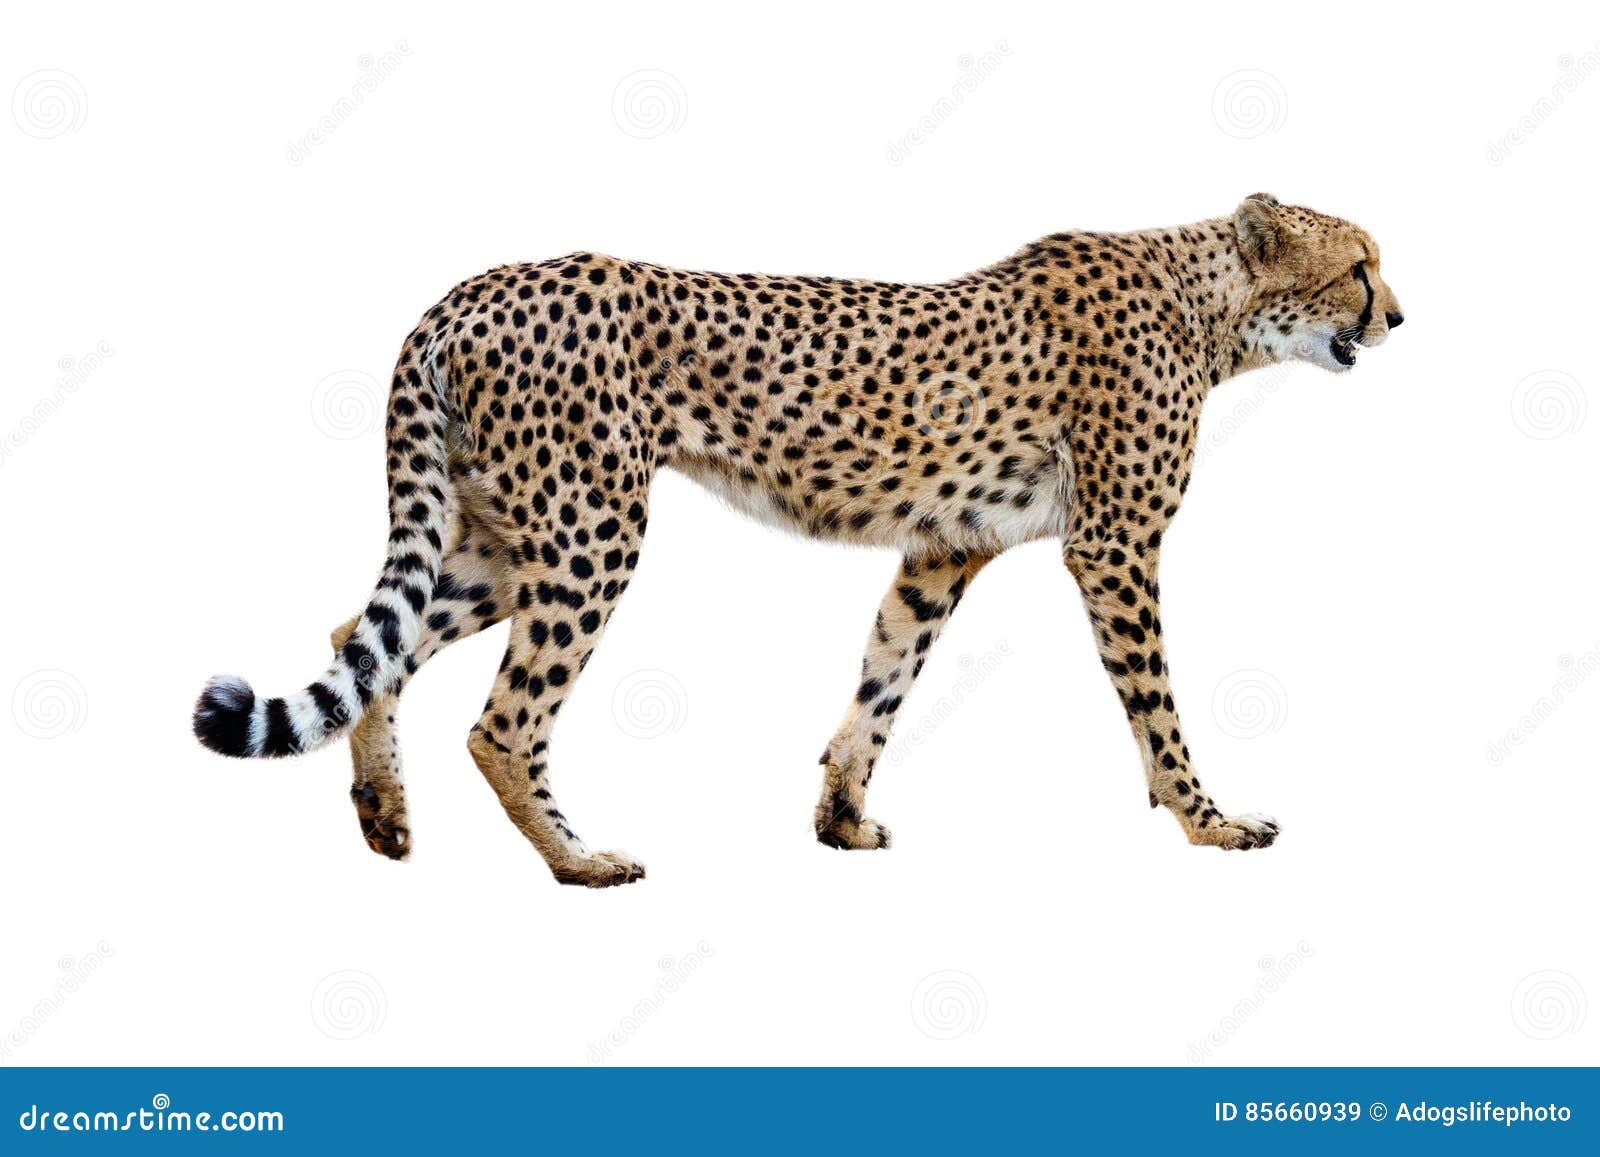 Cheetah Walking Profile Isolated on White Stock Image - Image of ...